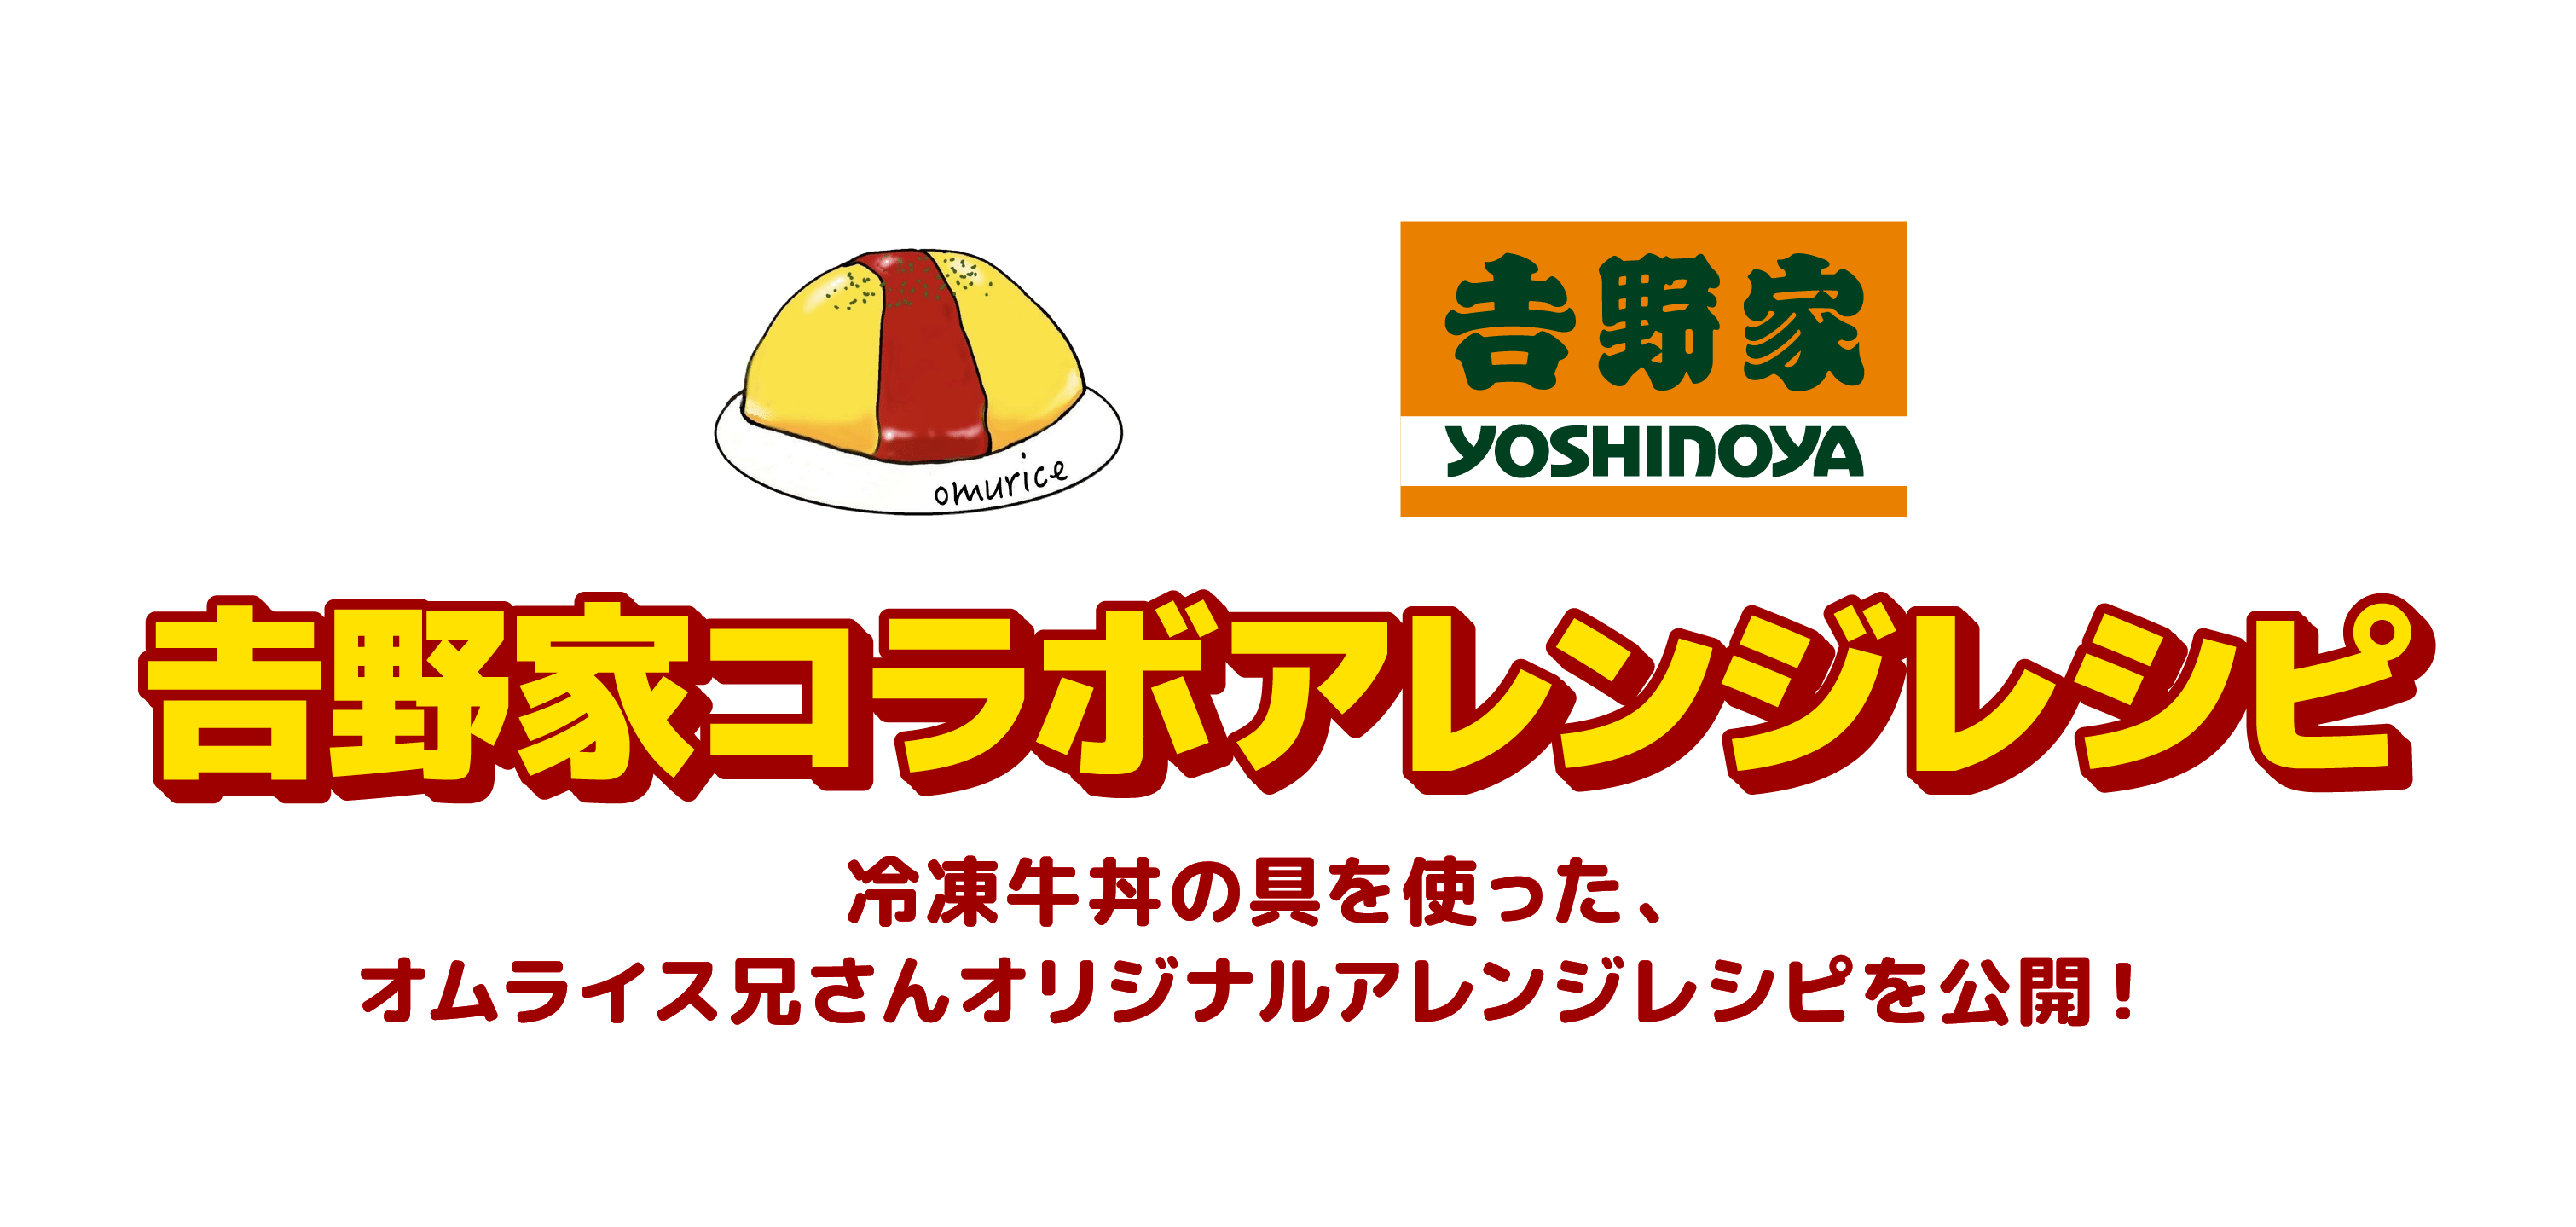 吉野家コラボアレンジレシピ|	冷凍牛丼の具を使った、オムライス兄さんオリジナルアレンジレシピを公開！